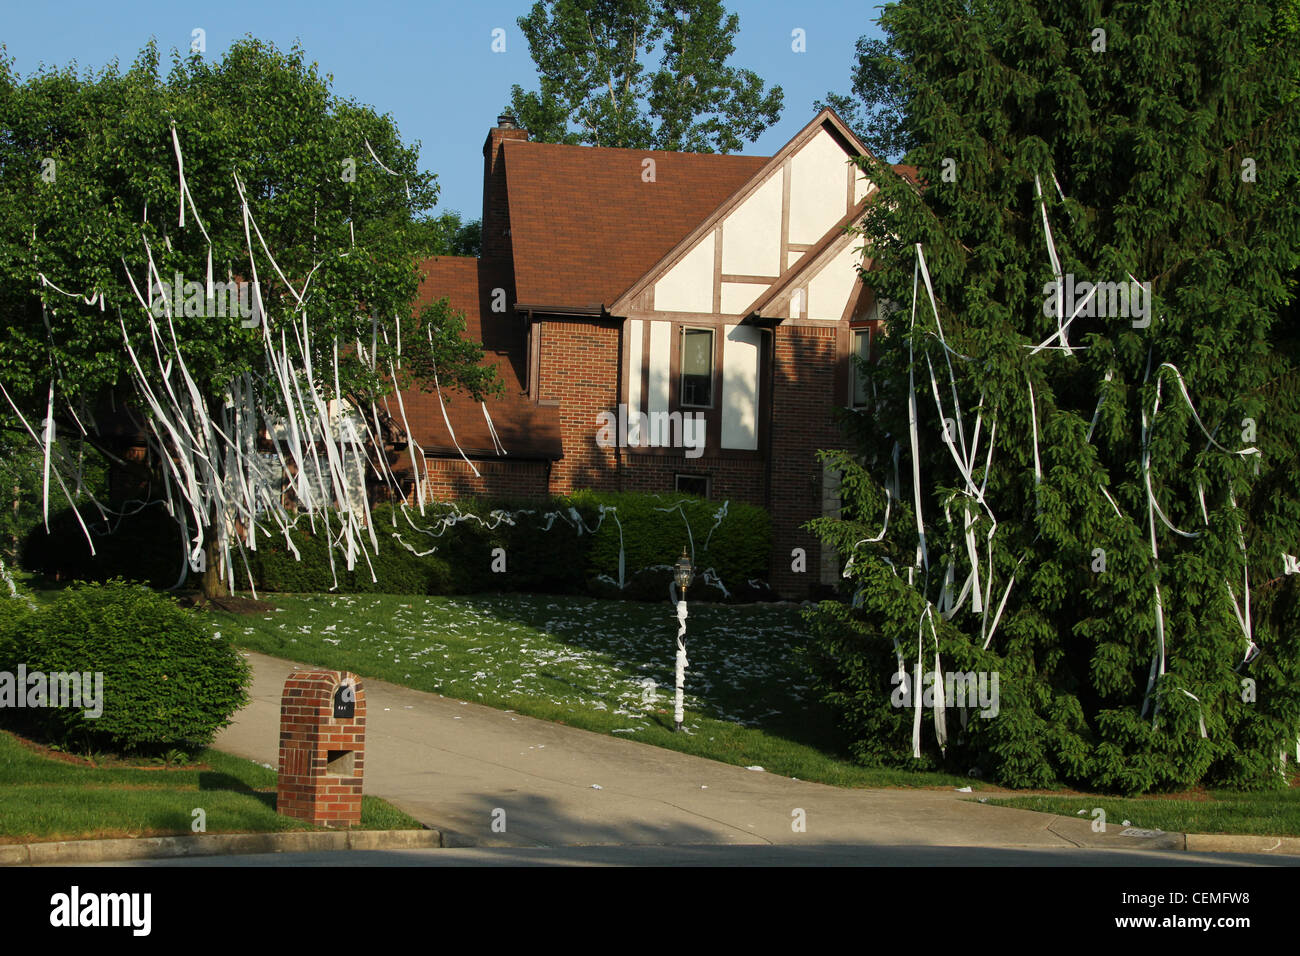 Haus mit Toilettenpapier in den Bäumen hängen. Teenager-Streich.  Beavercreek, Dayton, Ohio, USA Stockfotografie - Alamy